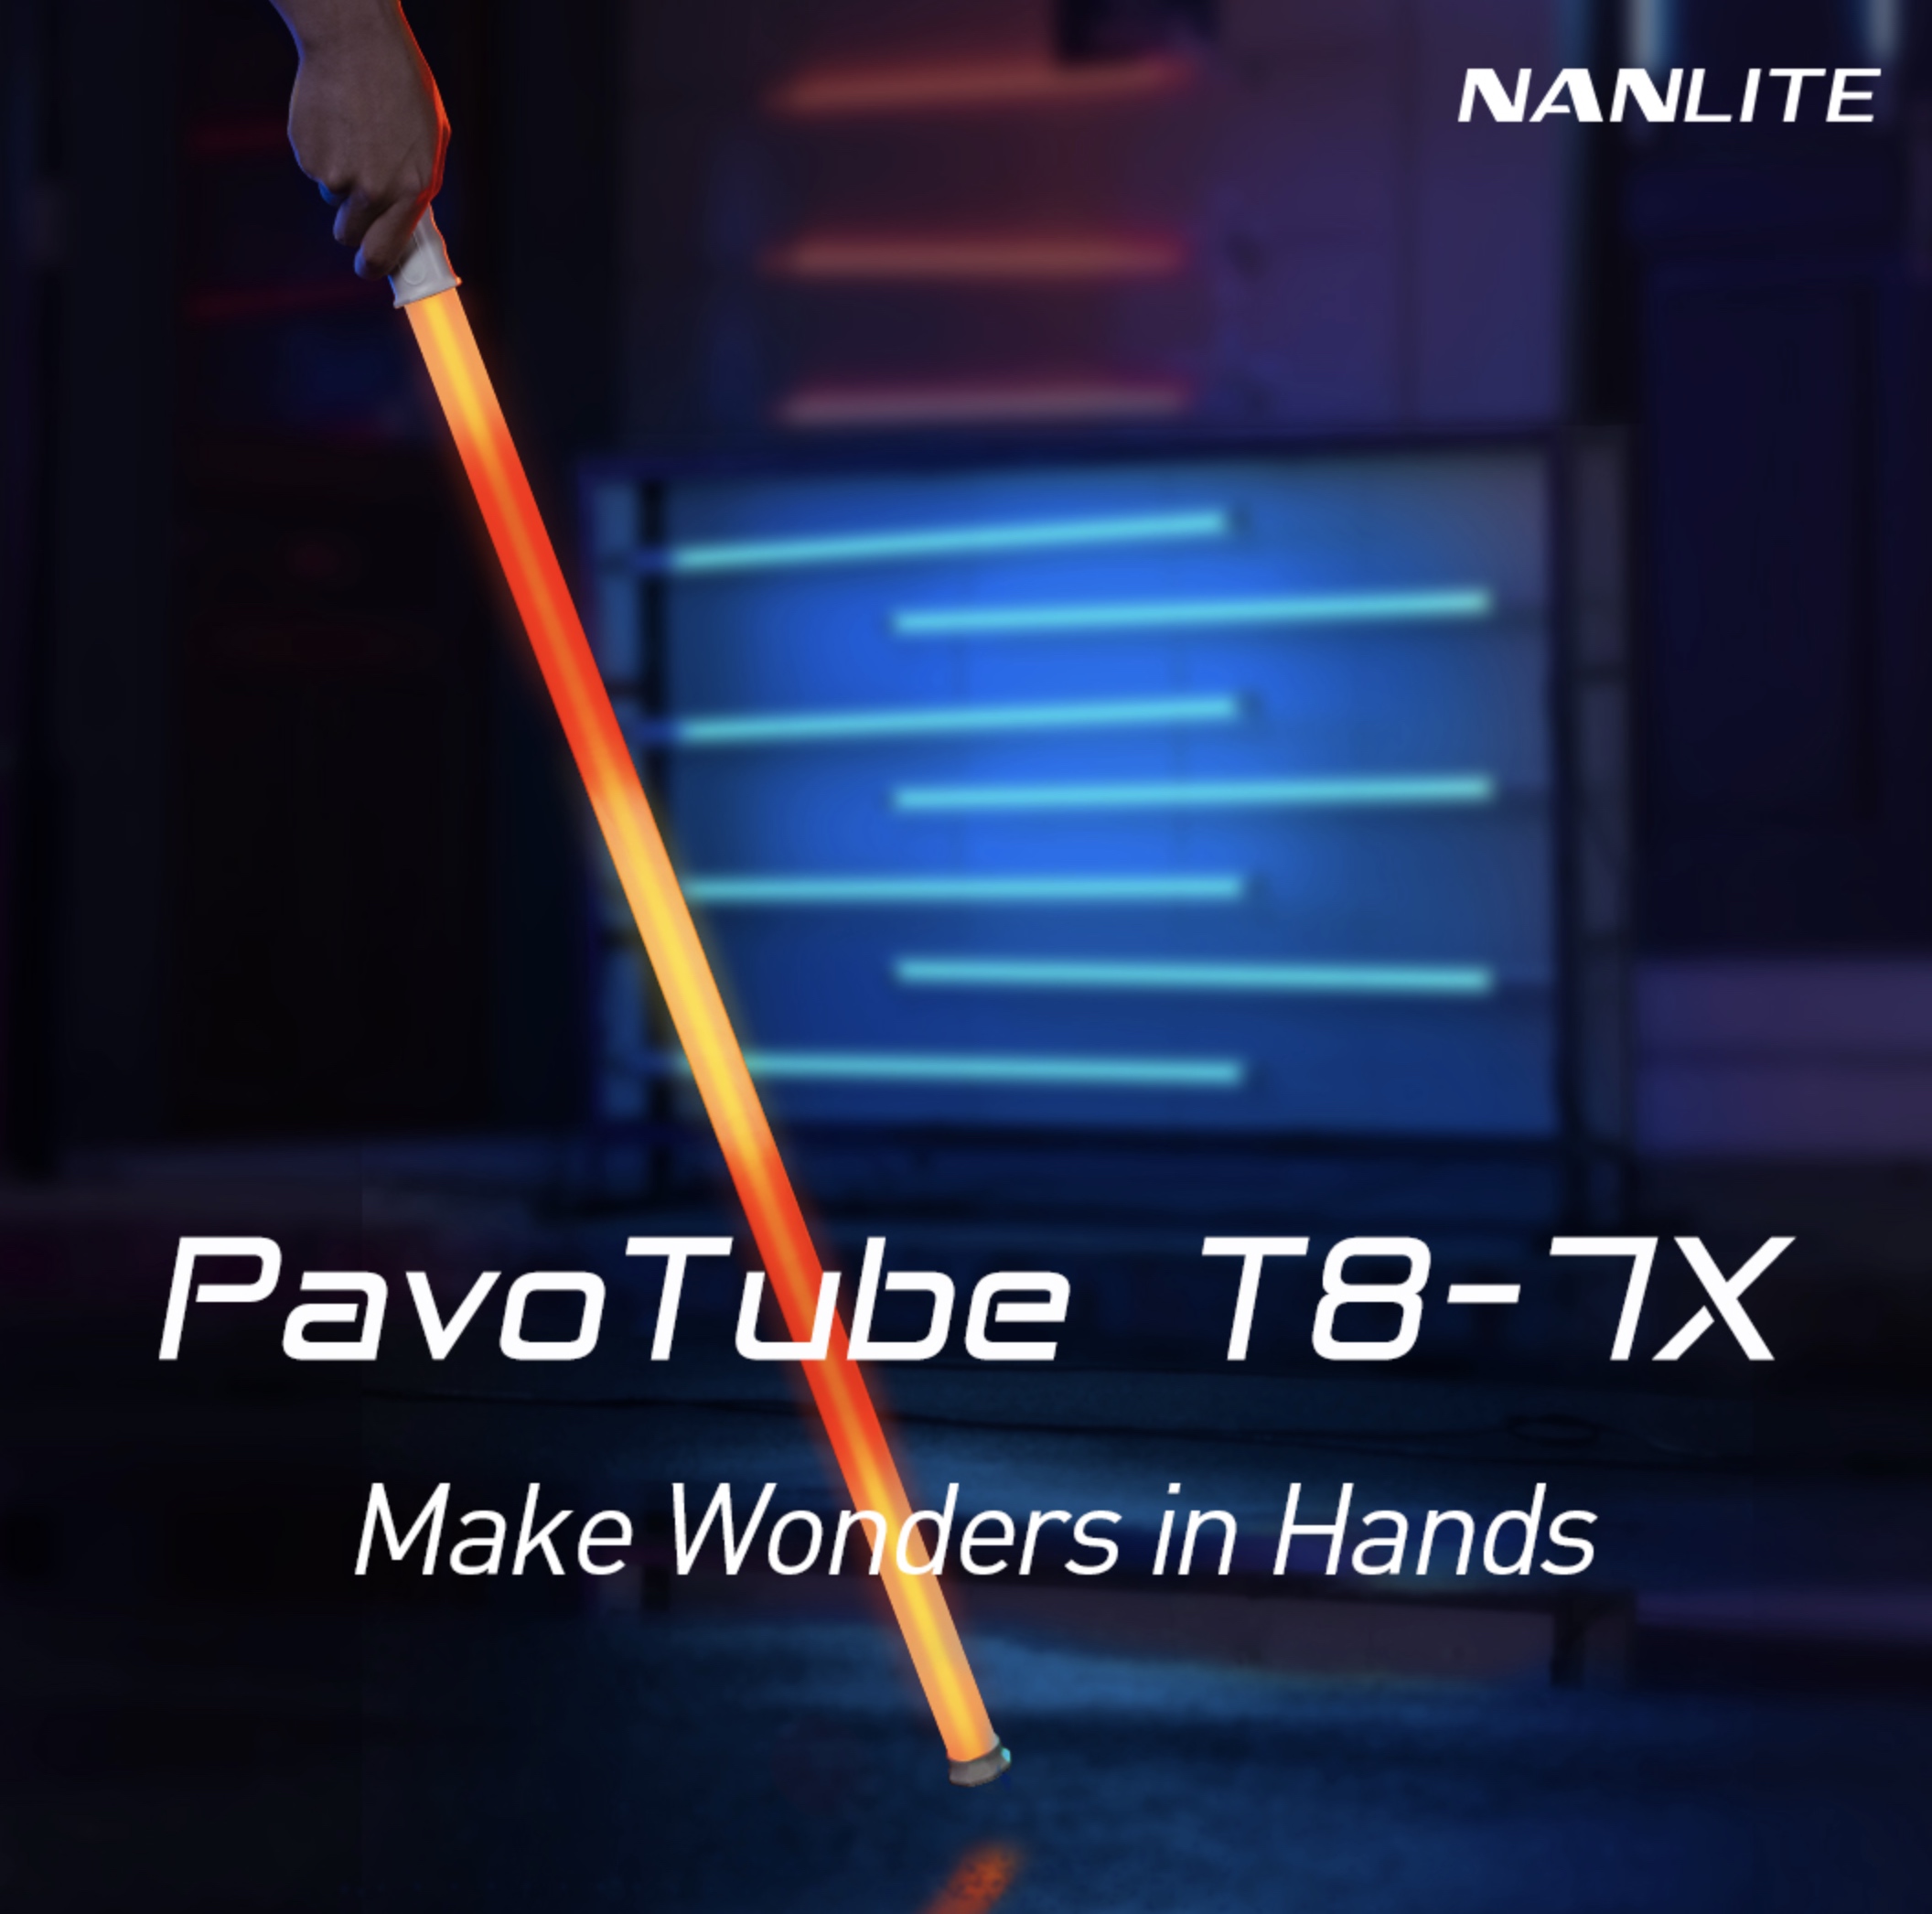 Nanlite PavoTube T8-7X - Newsshooter